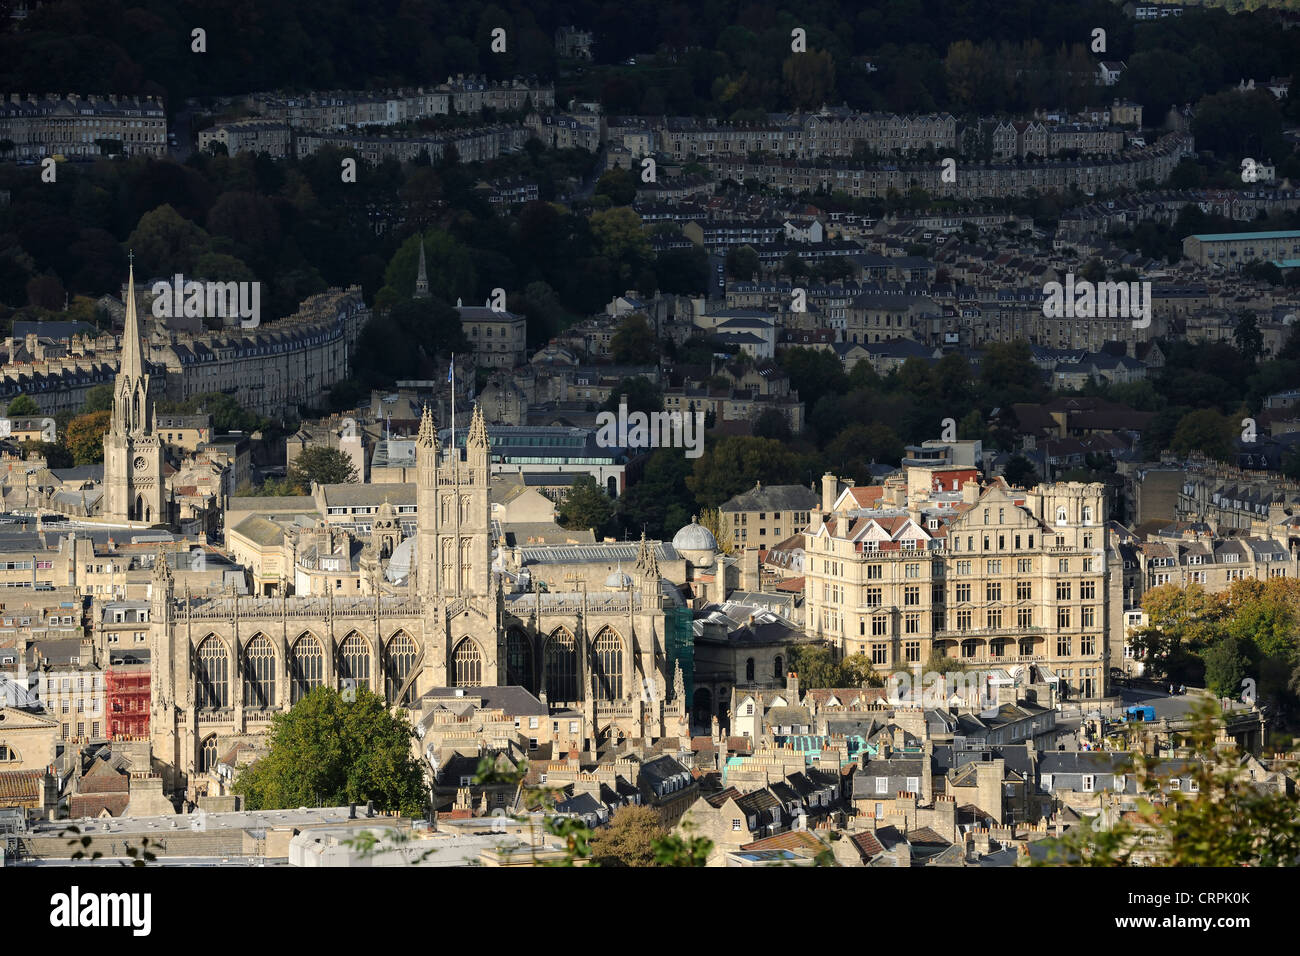 Vista sulla città storica di Bath, un sito del Patrimonio Mondiale è famosa come la città termale e per la sua architettura georgiana. Foto Stock